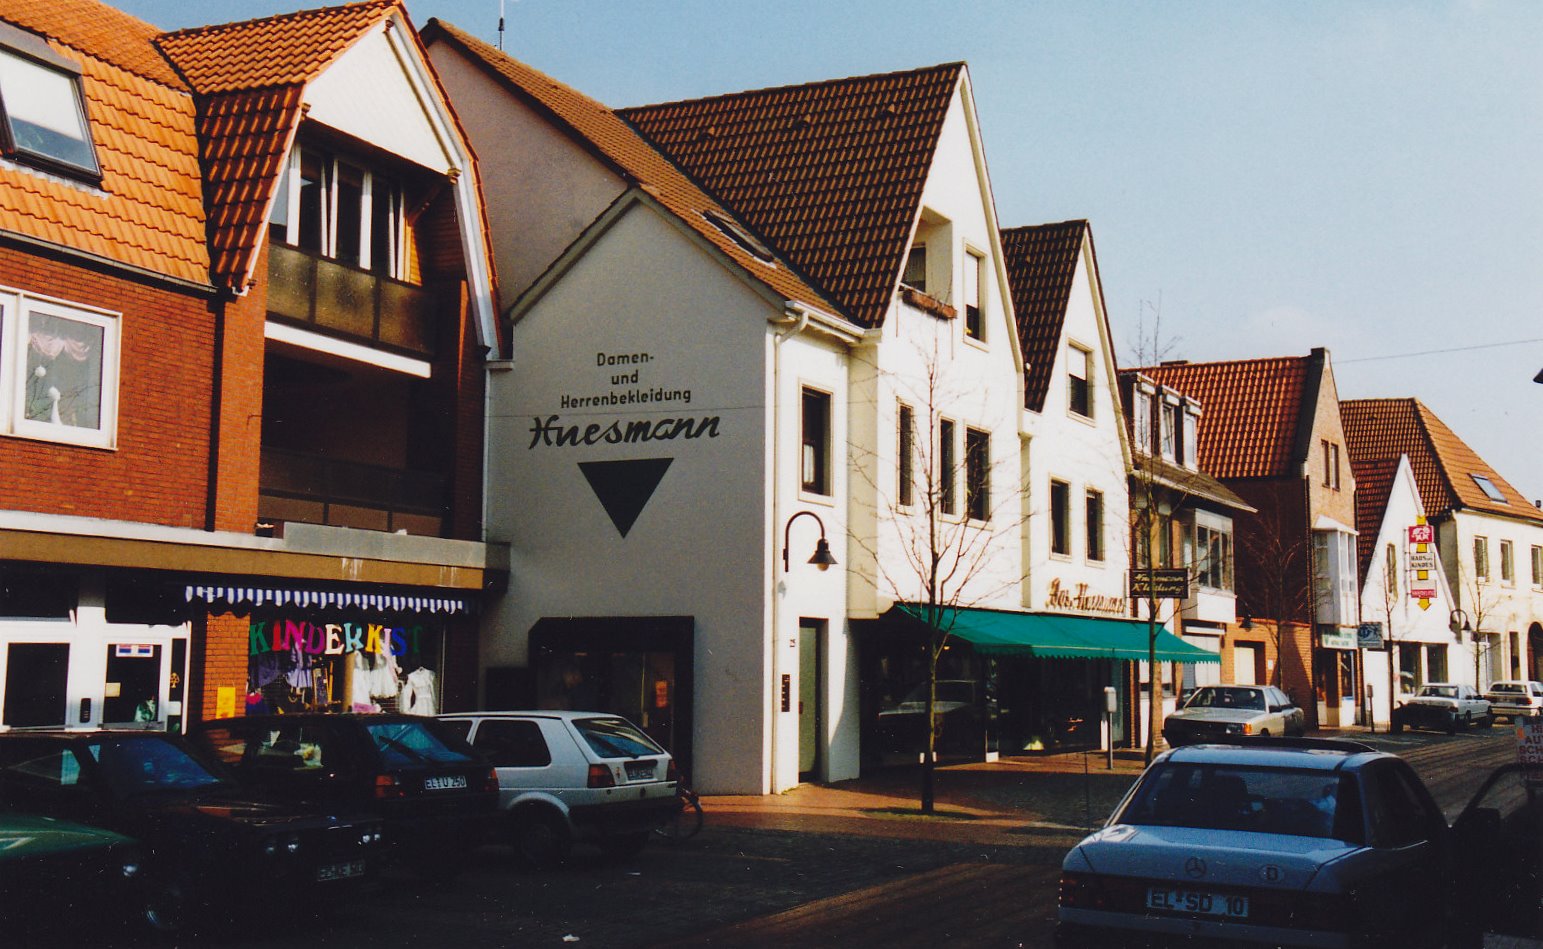 Abb. 2: 1975 vereinigte ein Neubau die Grundstücke Große Straße 14 (links) und 16 (rechts). Die Jungfer Hotze wohnte mit ihrer Nichte auf dem rechten Grundstück.